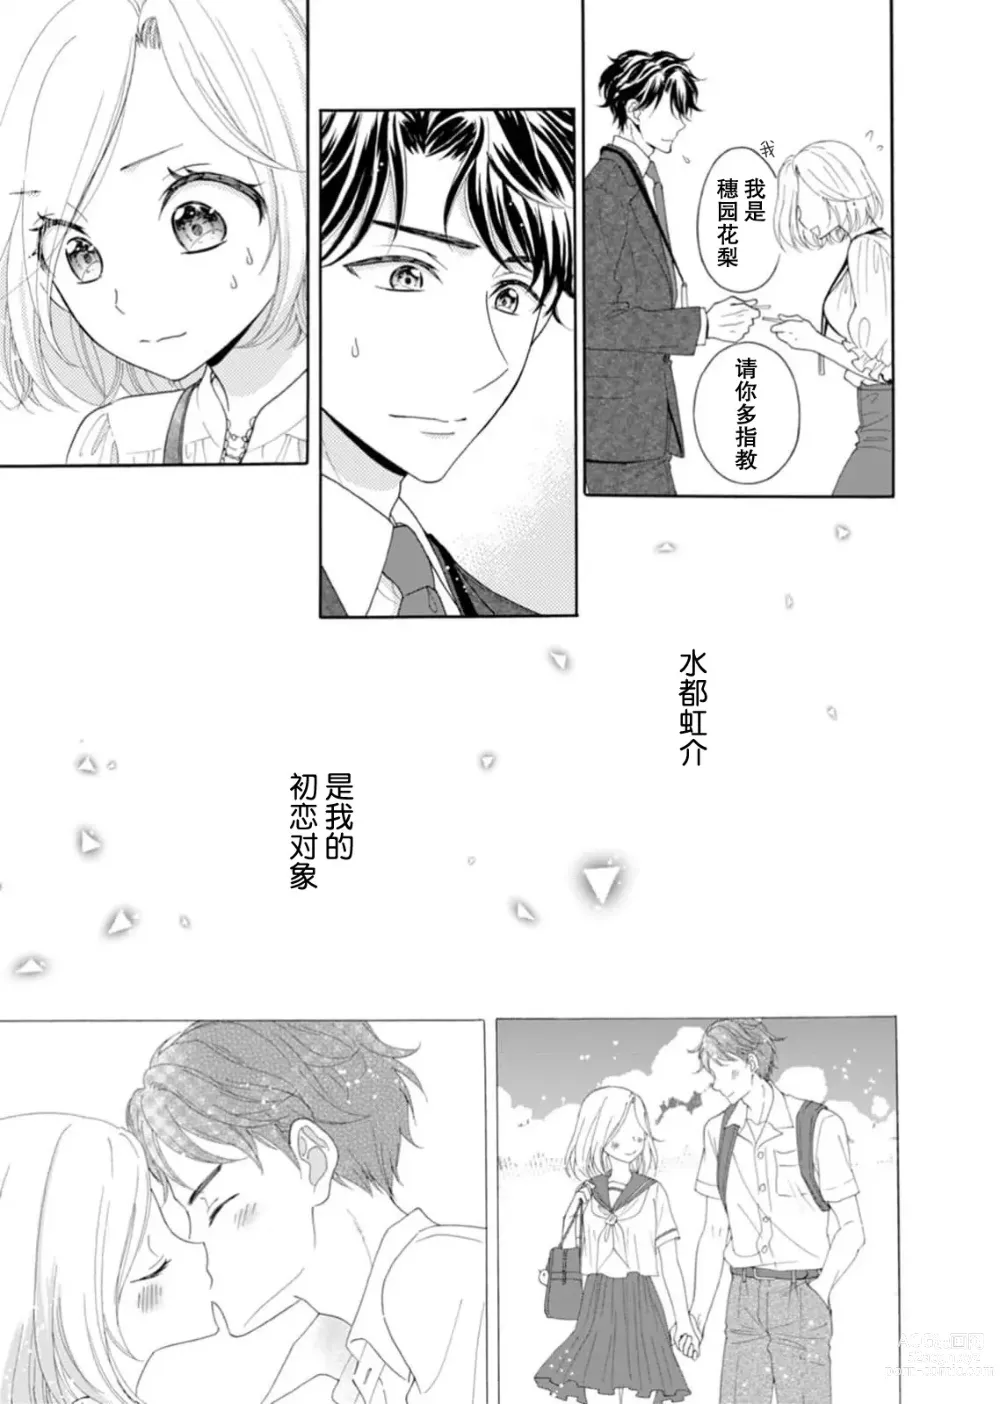 Page 5 of manga 再度初体验！与那时不同。深入灵魂的快感连心都融化…